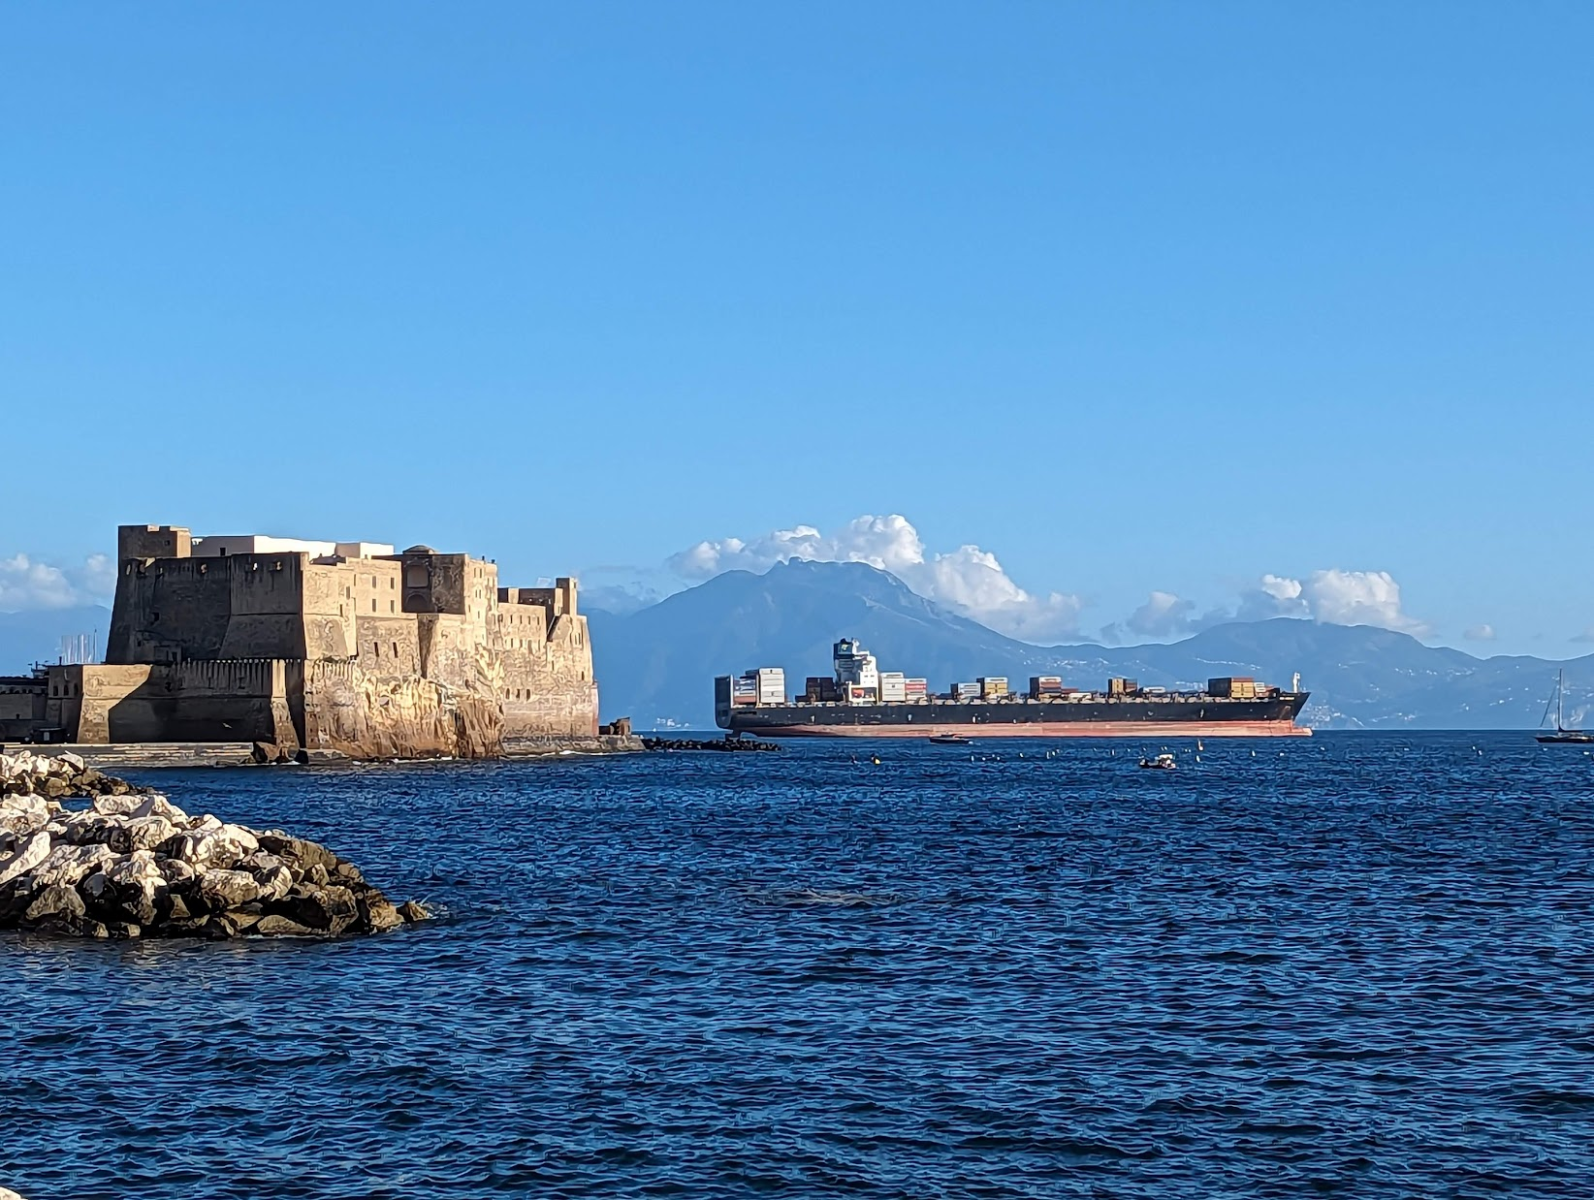 Castel dell'ovo à Naples sur le front de mer